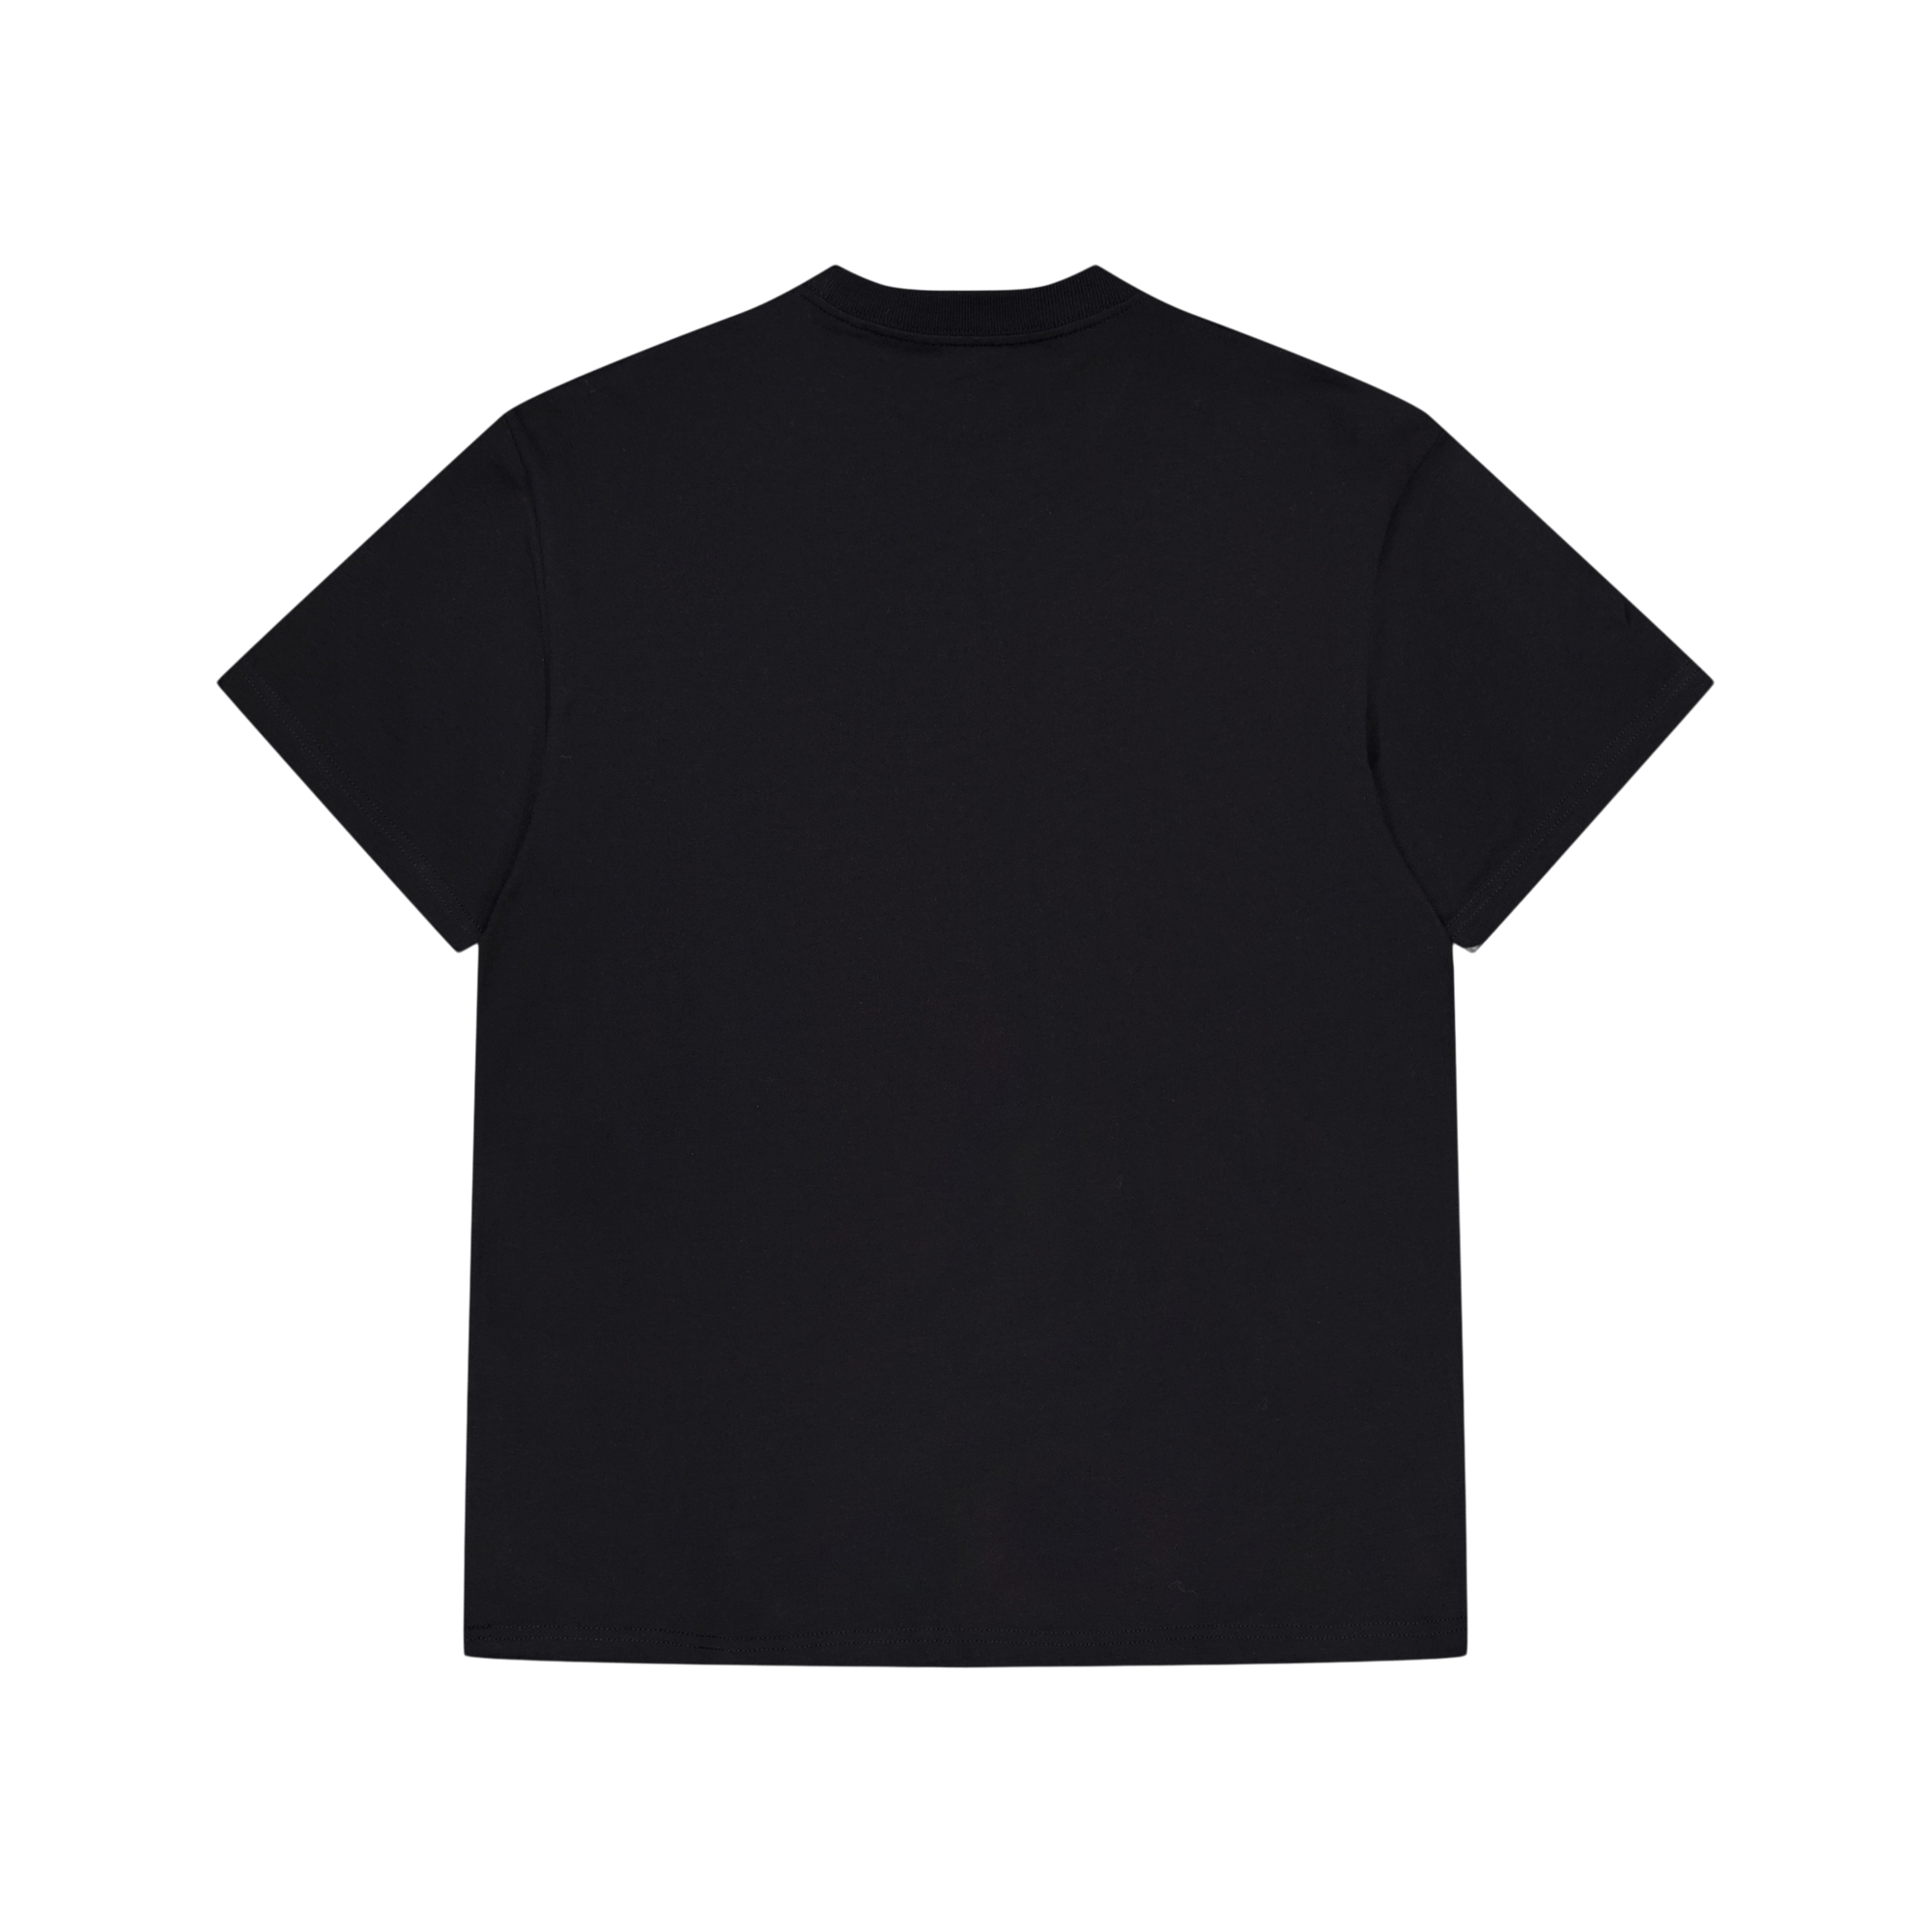 S/s Onyx T-shirt Black / Wax